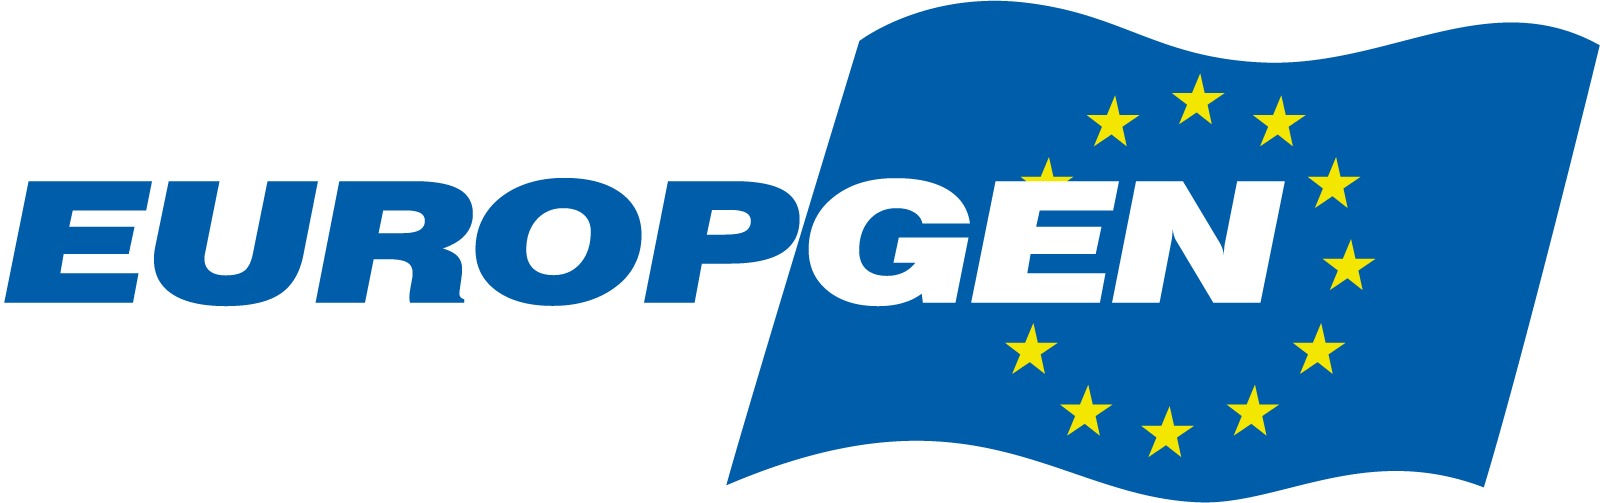 Europgen